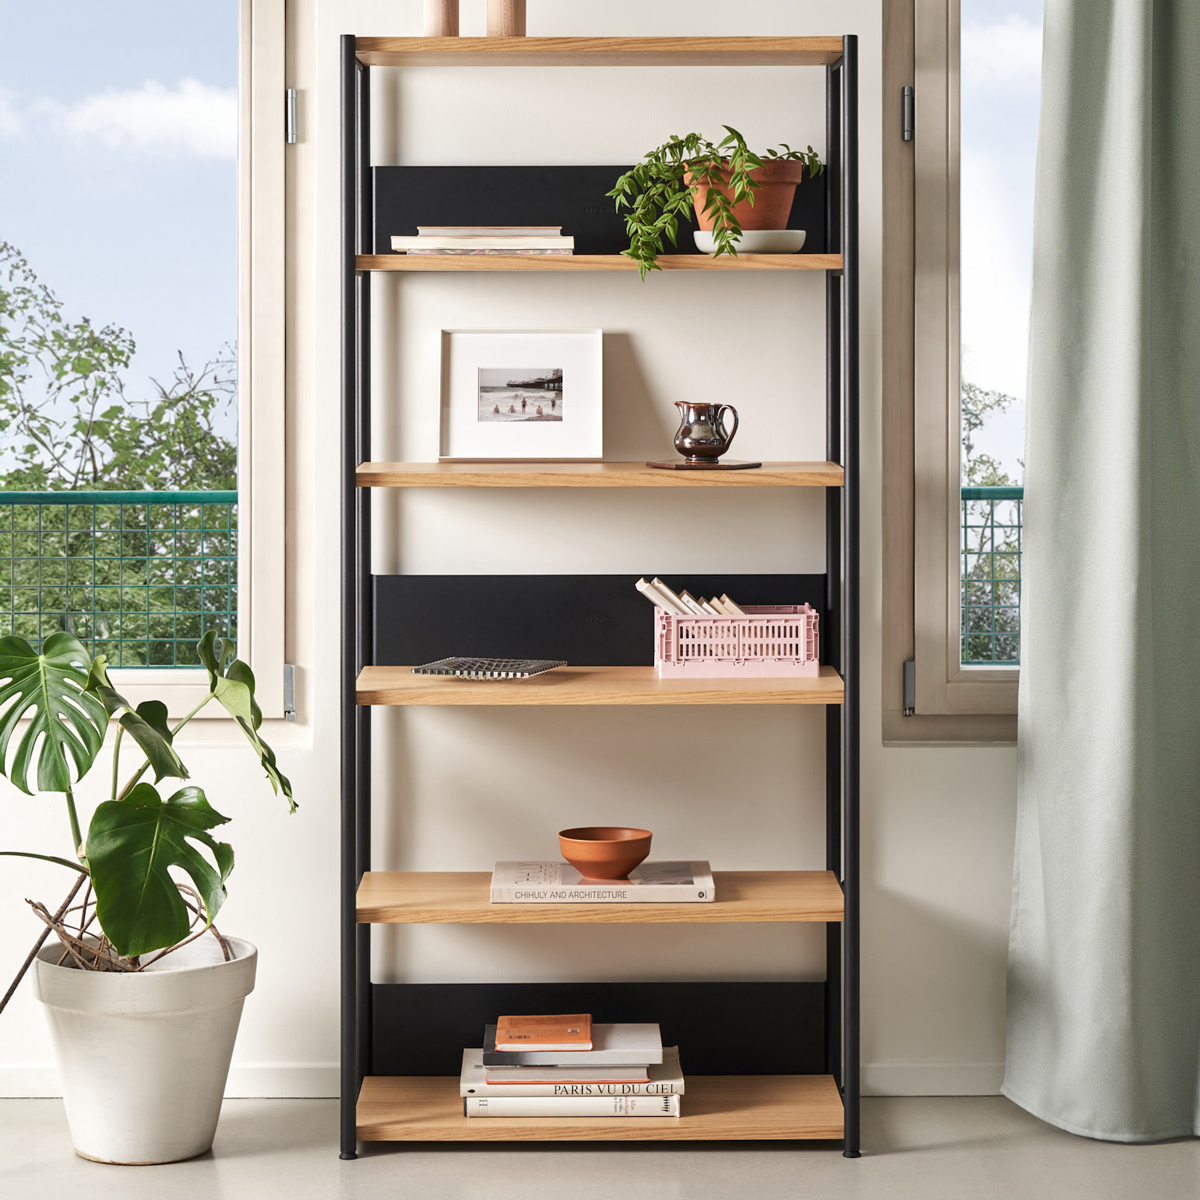 UNIT shelf - H180 x W84cm - eco-certified wood